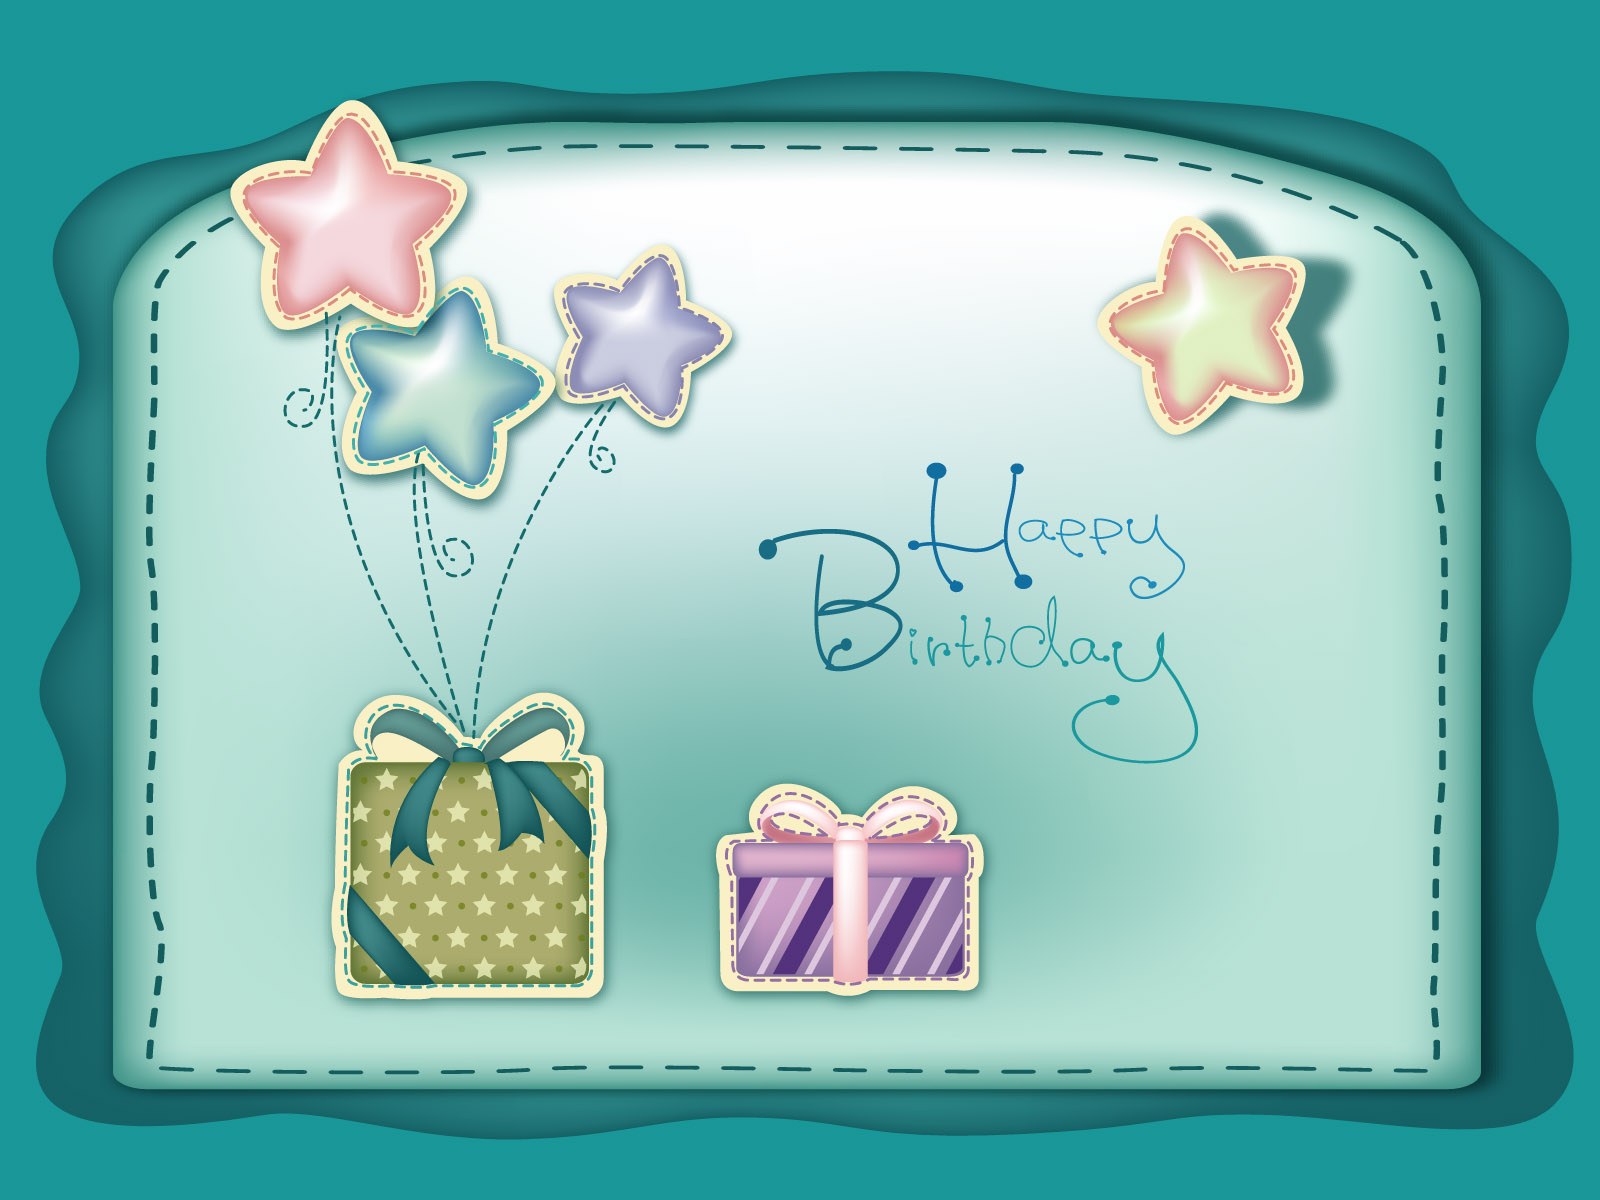 생일 축하 친구 벽지,케이크 꾸미기 공급,구름,착빙,삽화,클립 아트